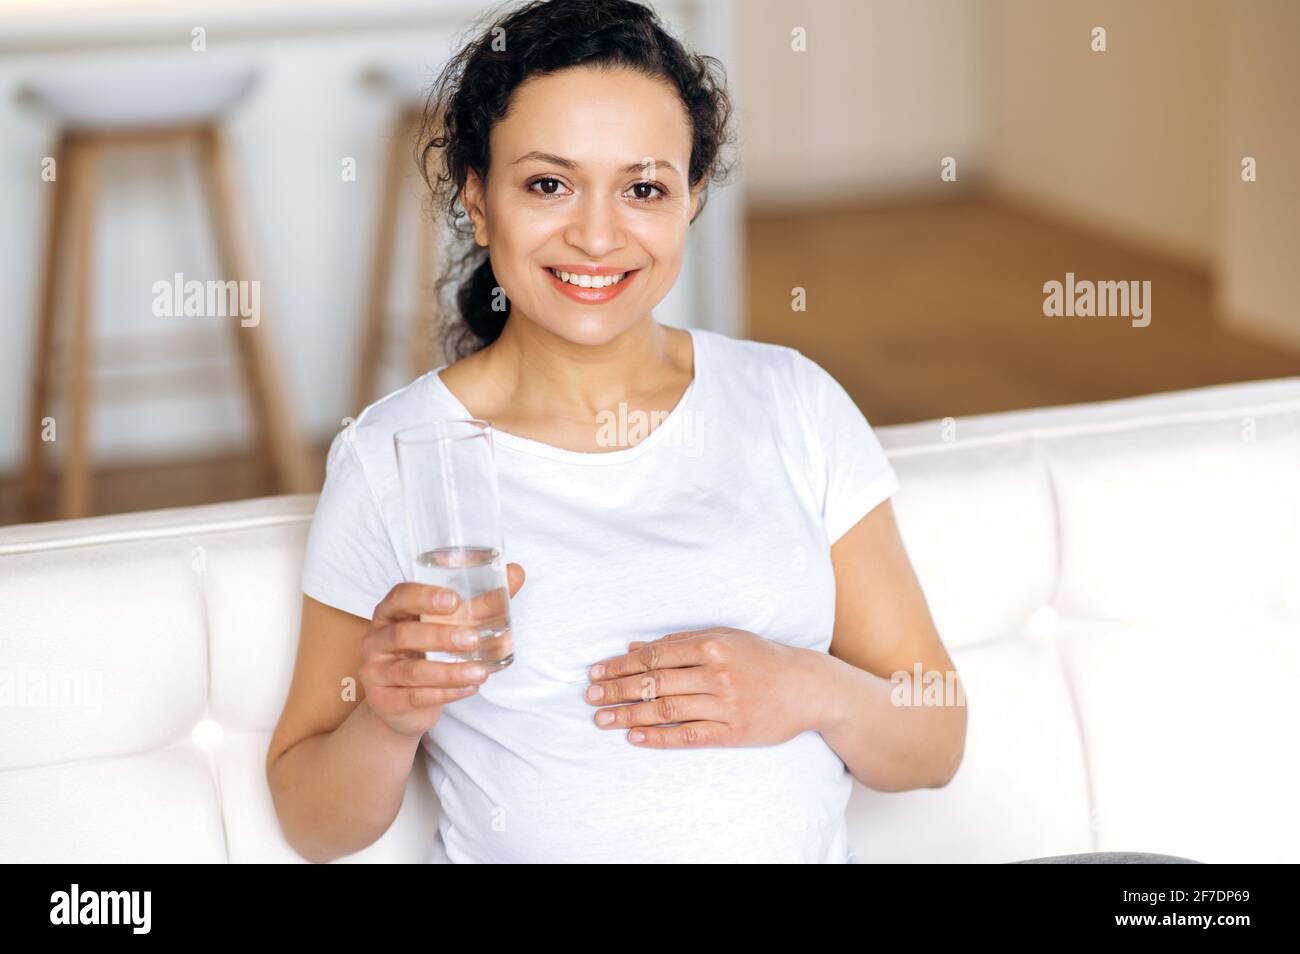 Ziemlich attraktive gesunde Mischling Frau zu Hause im Wohnzimmer sitzen, leben einen gesunden Lebensstil, trinken täglich Menge an Wasser, hält ein Glas sauberes Wasser, Blick auf die Kamera, lächelnd Stockfoto